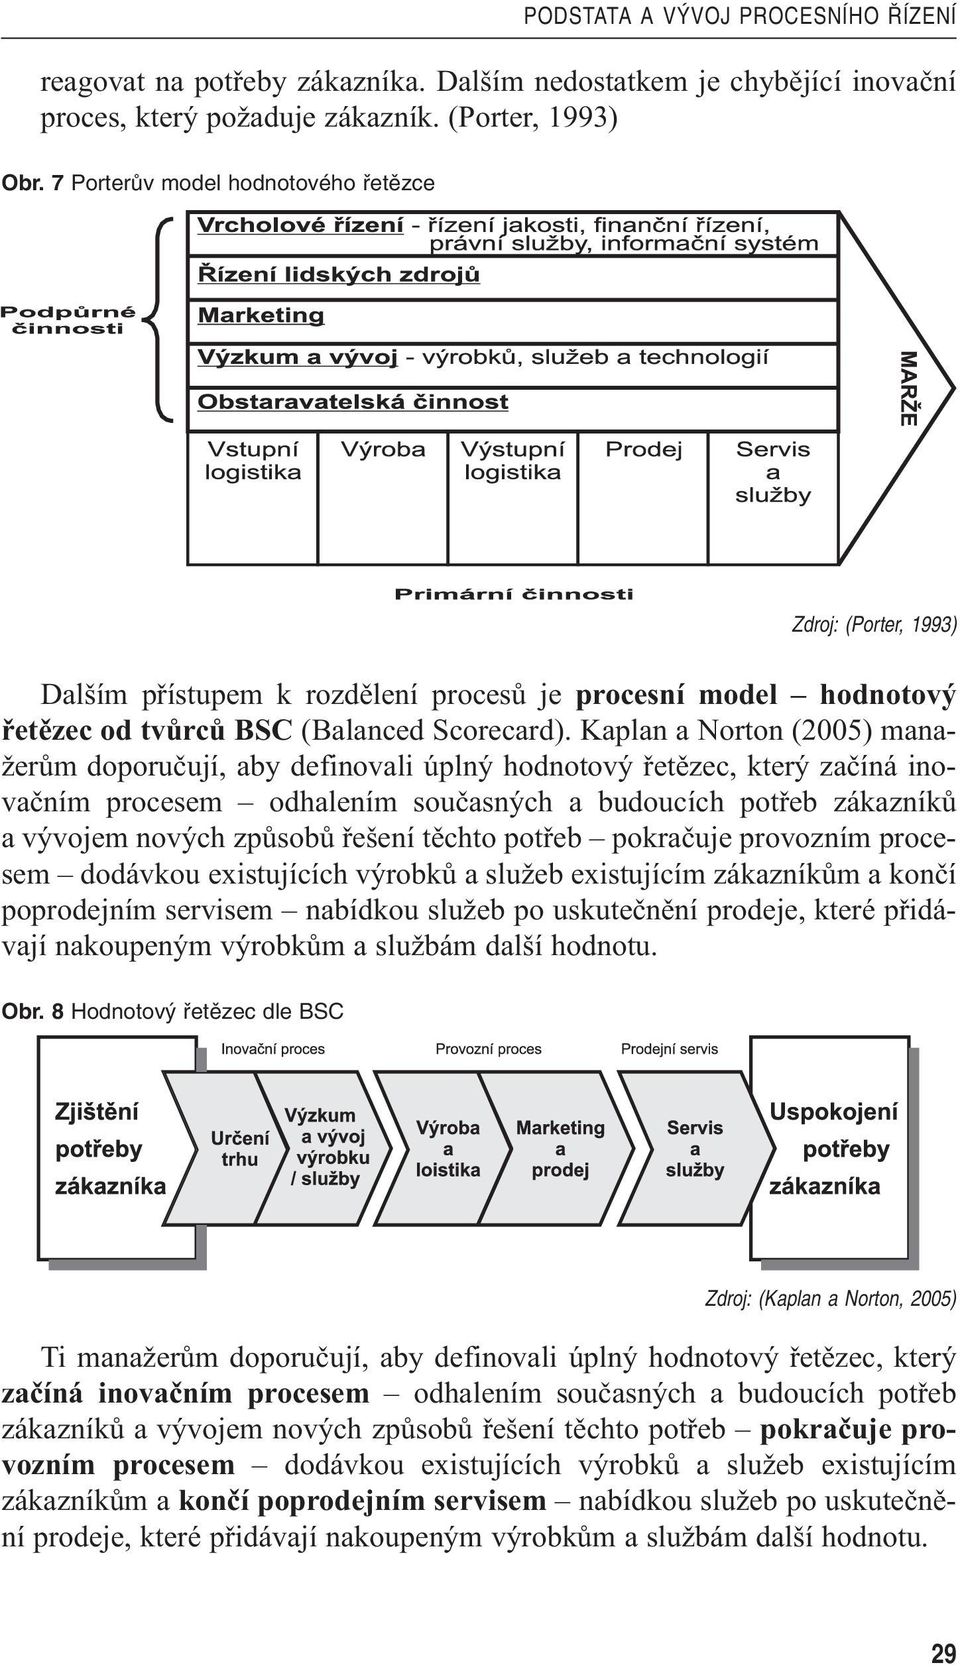 Kaplan a Norton (2005) manažerům doporučují, aby definovali úplný hodnotový řetězec, který začíná inovačním procesem odhalením současných a budoucích potřeb zákazníků a vývojem nových způsobů řešení